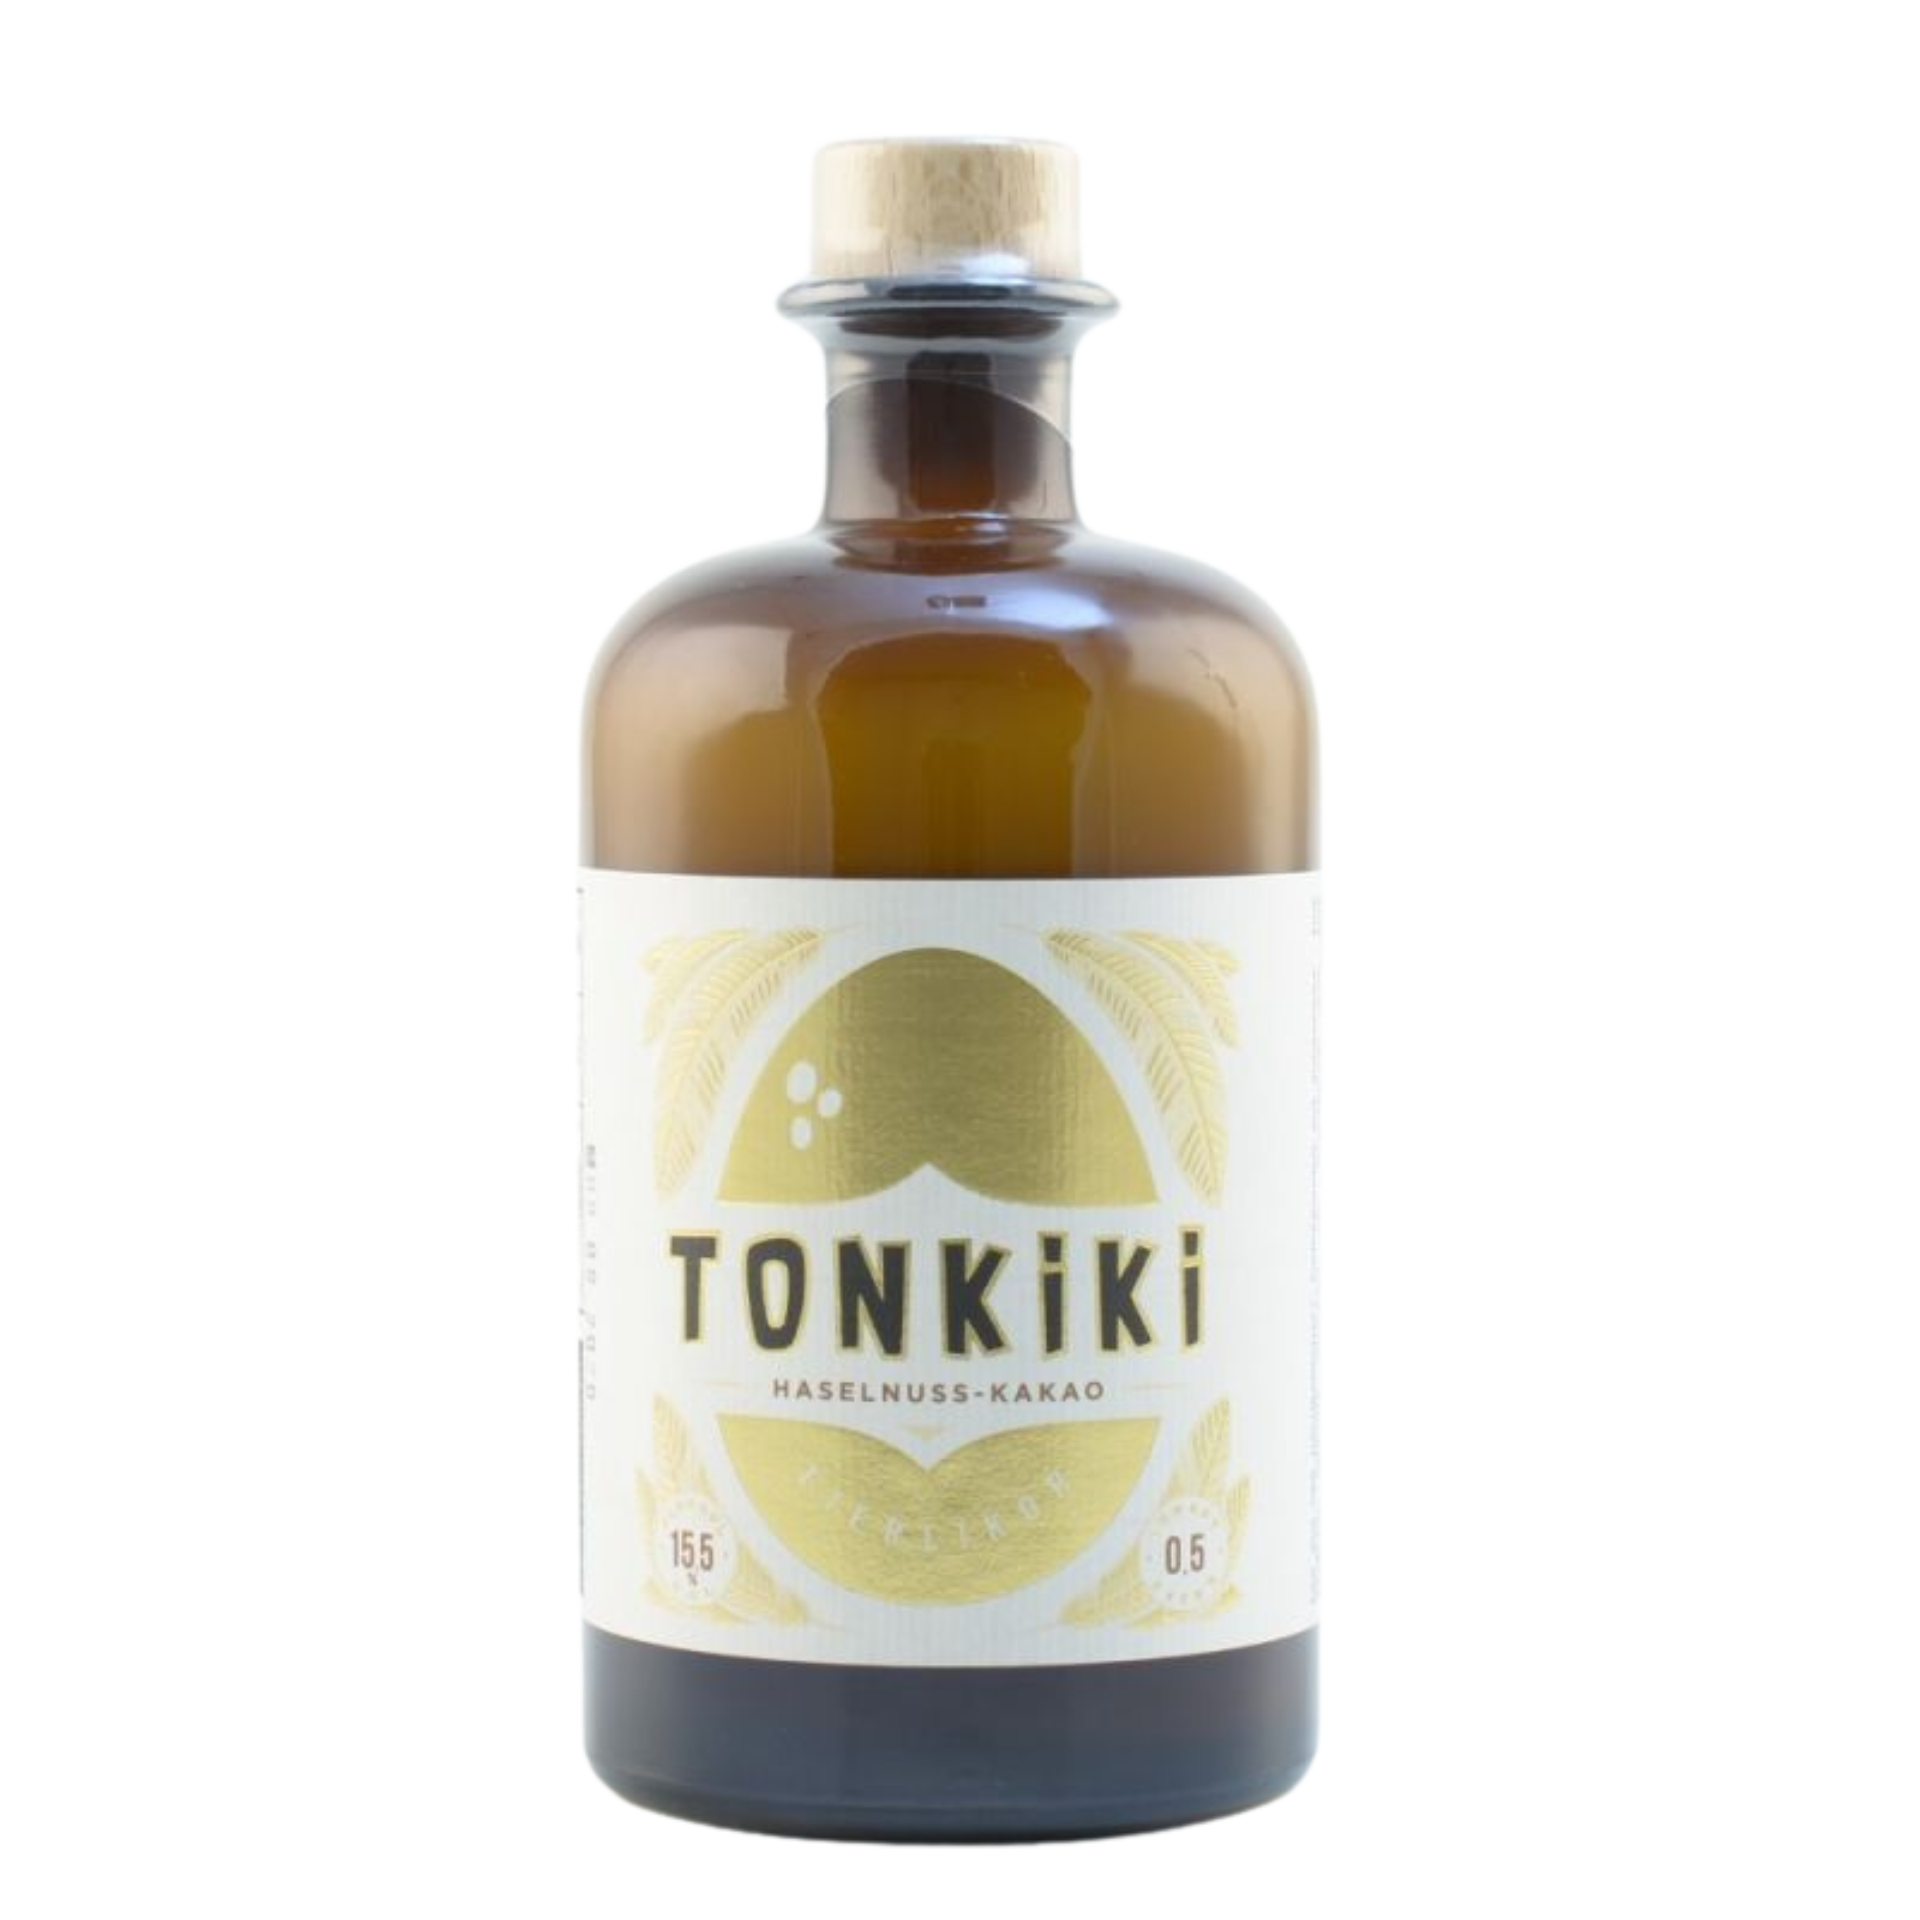 Tonkiki Eierlikör Haselnuss-Kakao 15,5% 0,5l